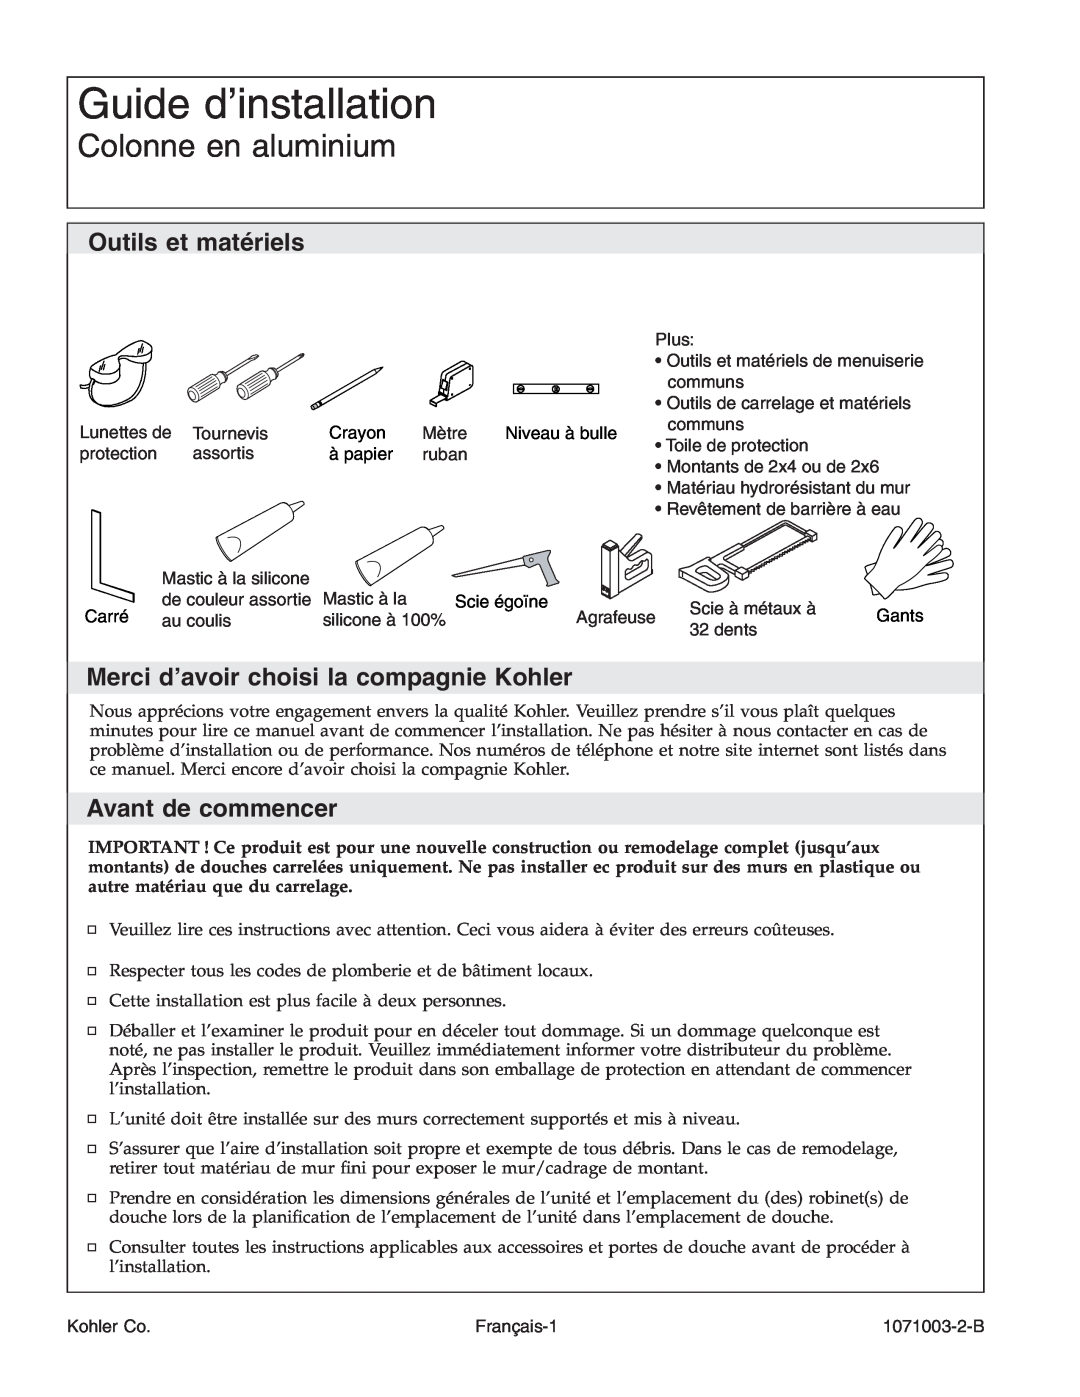 Kohler 1071003-2-B, K-1840 manual Guide d’installation, Colonne en aluminium, Outils et matériels, Avant de commencer 